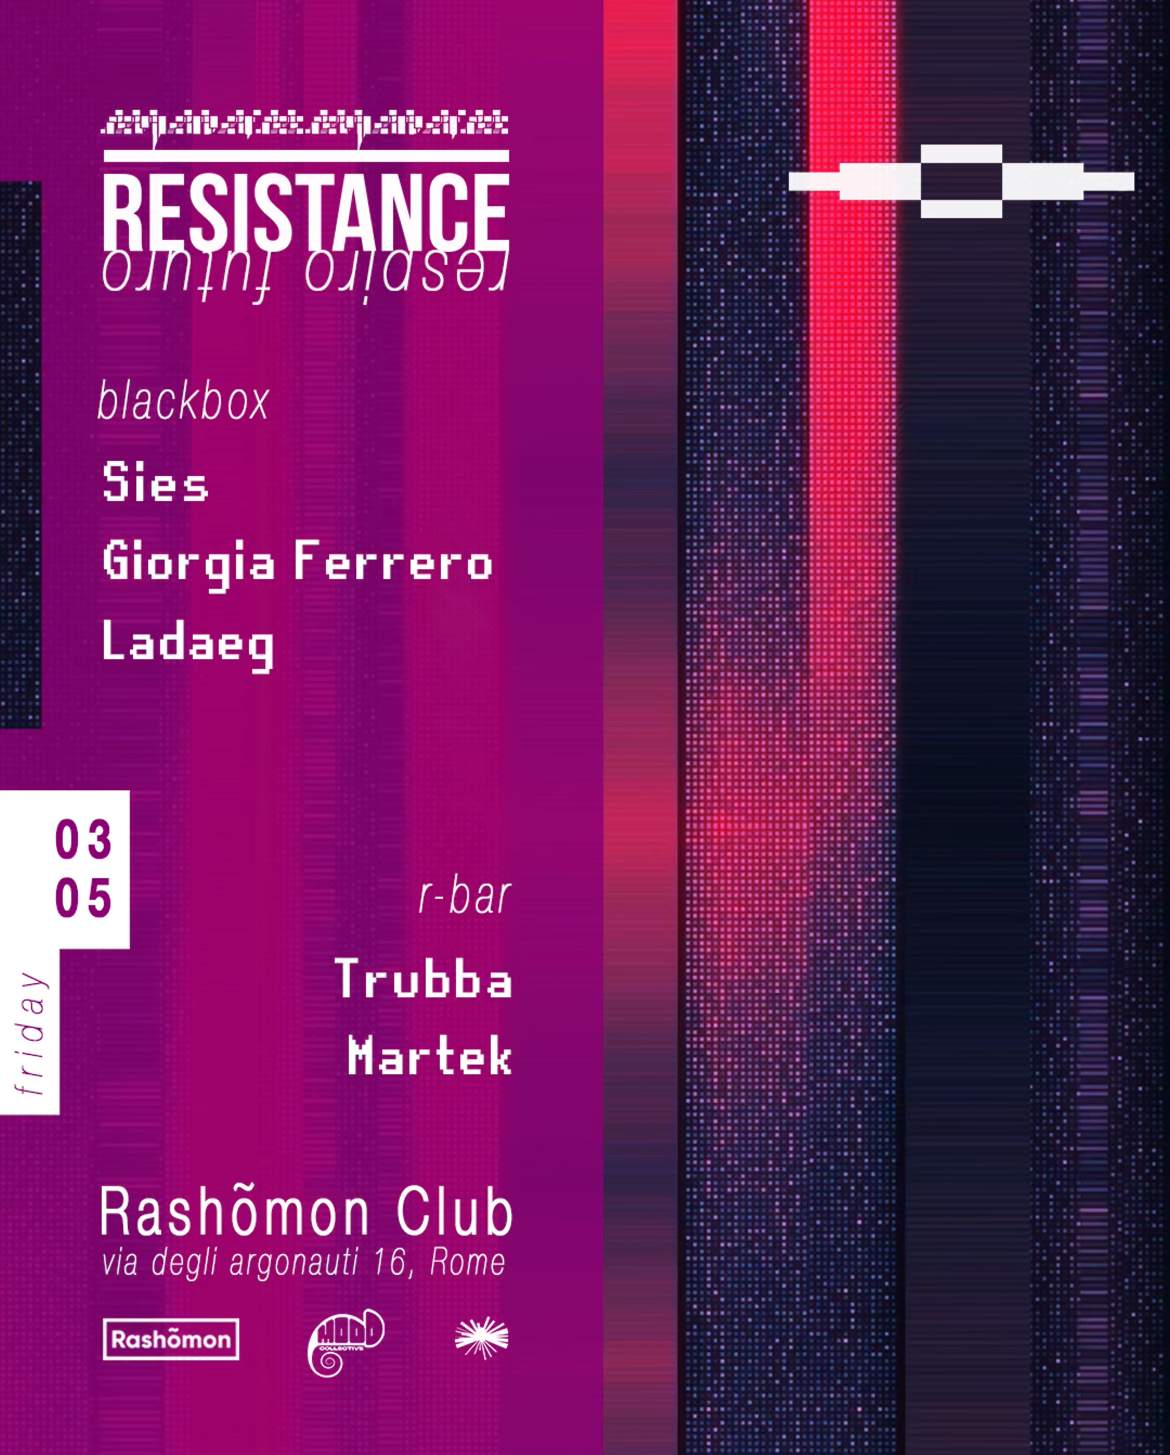 Resistance: Sies, Giorgia Ferrero, Ladaeg - Página trasera